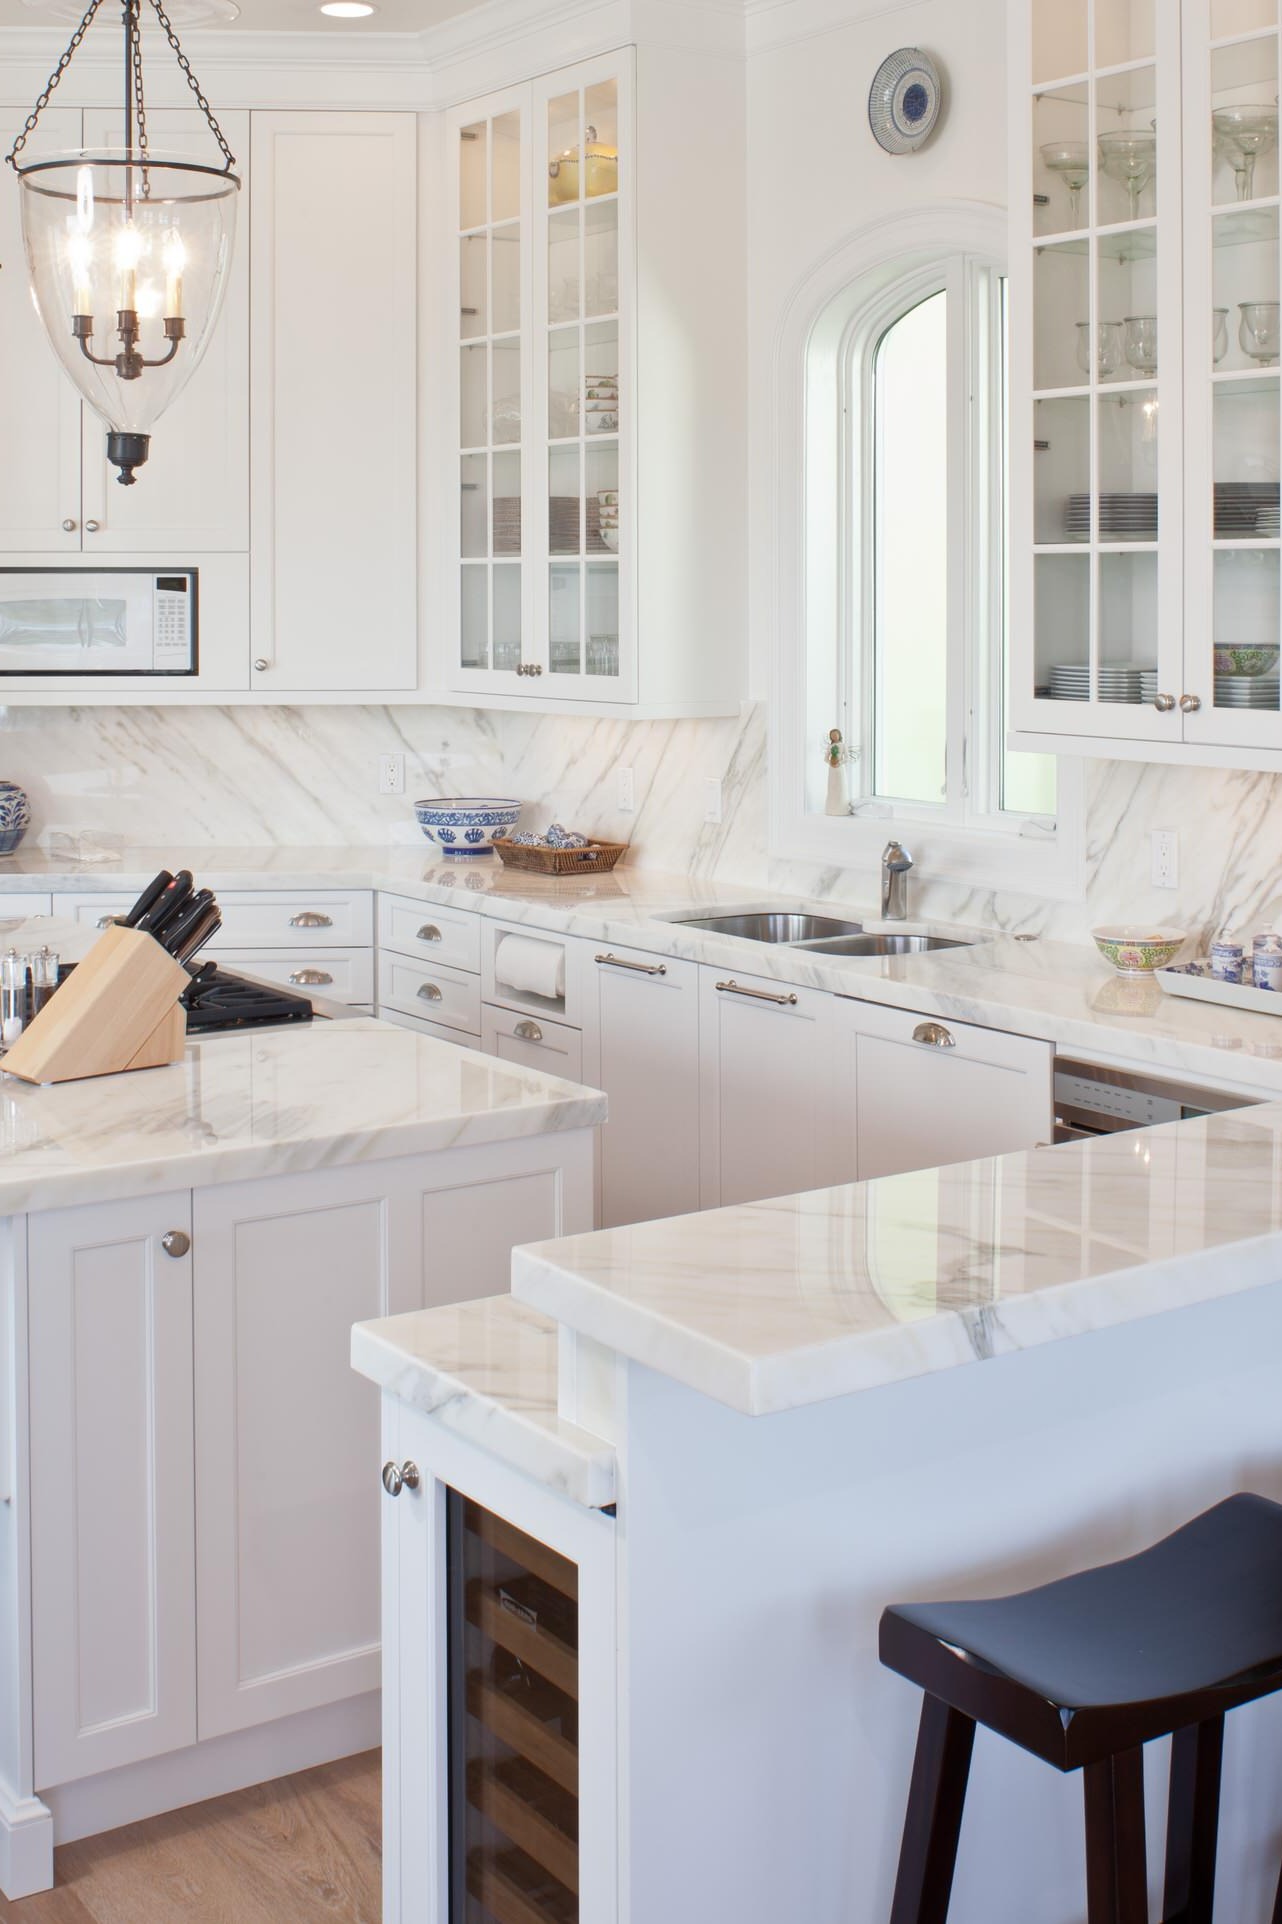 White Marble Countertops Full Height Backsplash Cabinets Dark Hardwood Floor